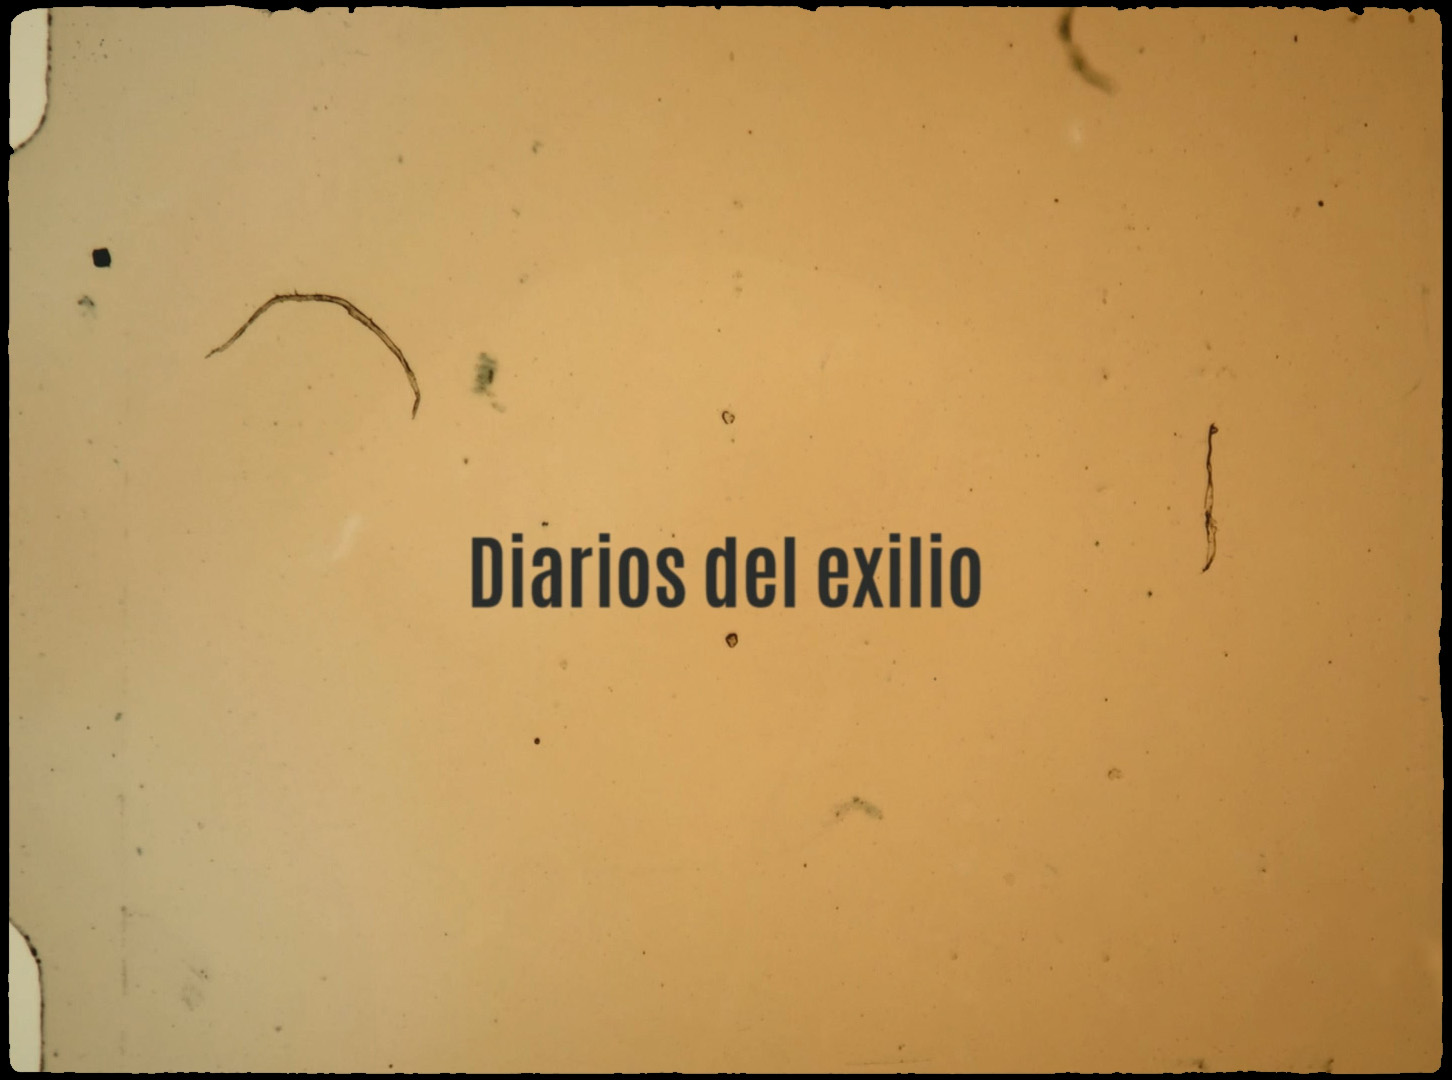 Filmoteca Española estrena Diarios del exilio, un filme que reconstruye el mapa del exilio español a ambos lados del Atlántico